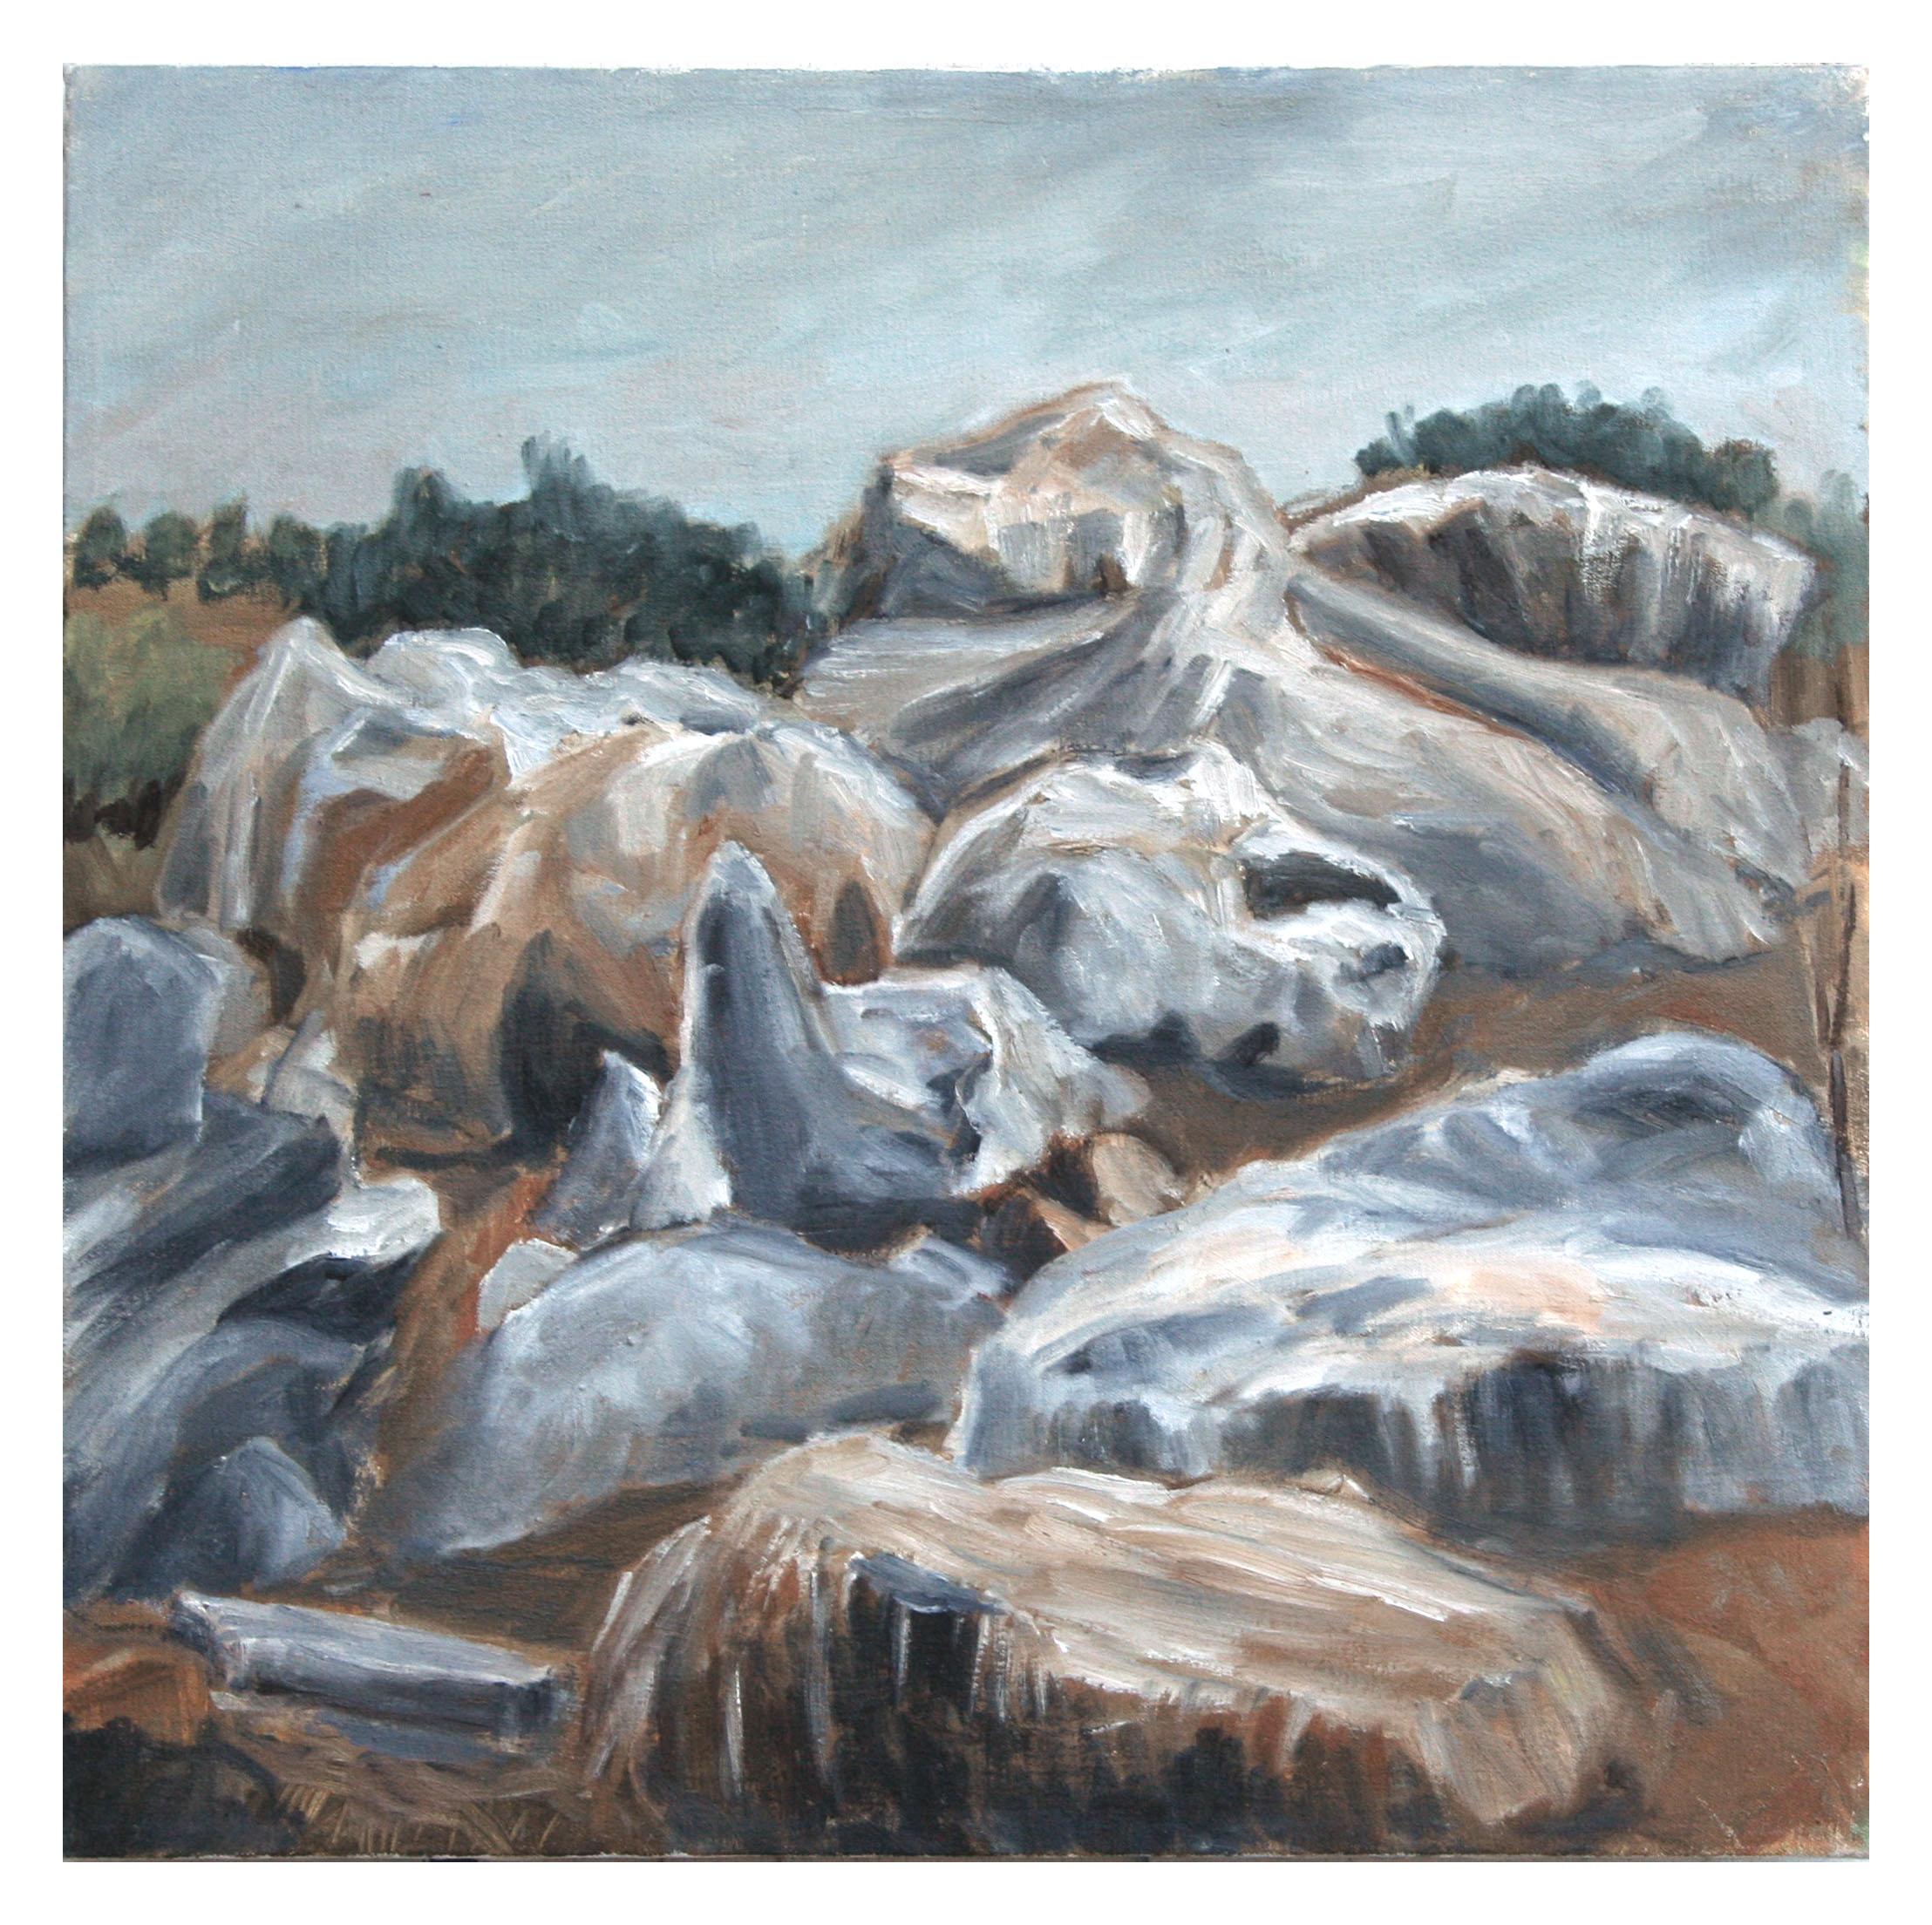 Trevor Lewis Andrews Landscape Painting - Rocky Formation Landscape